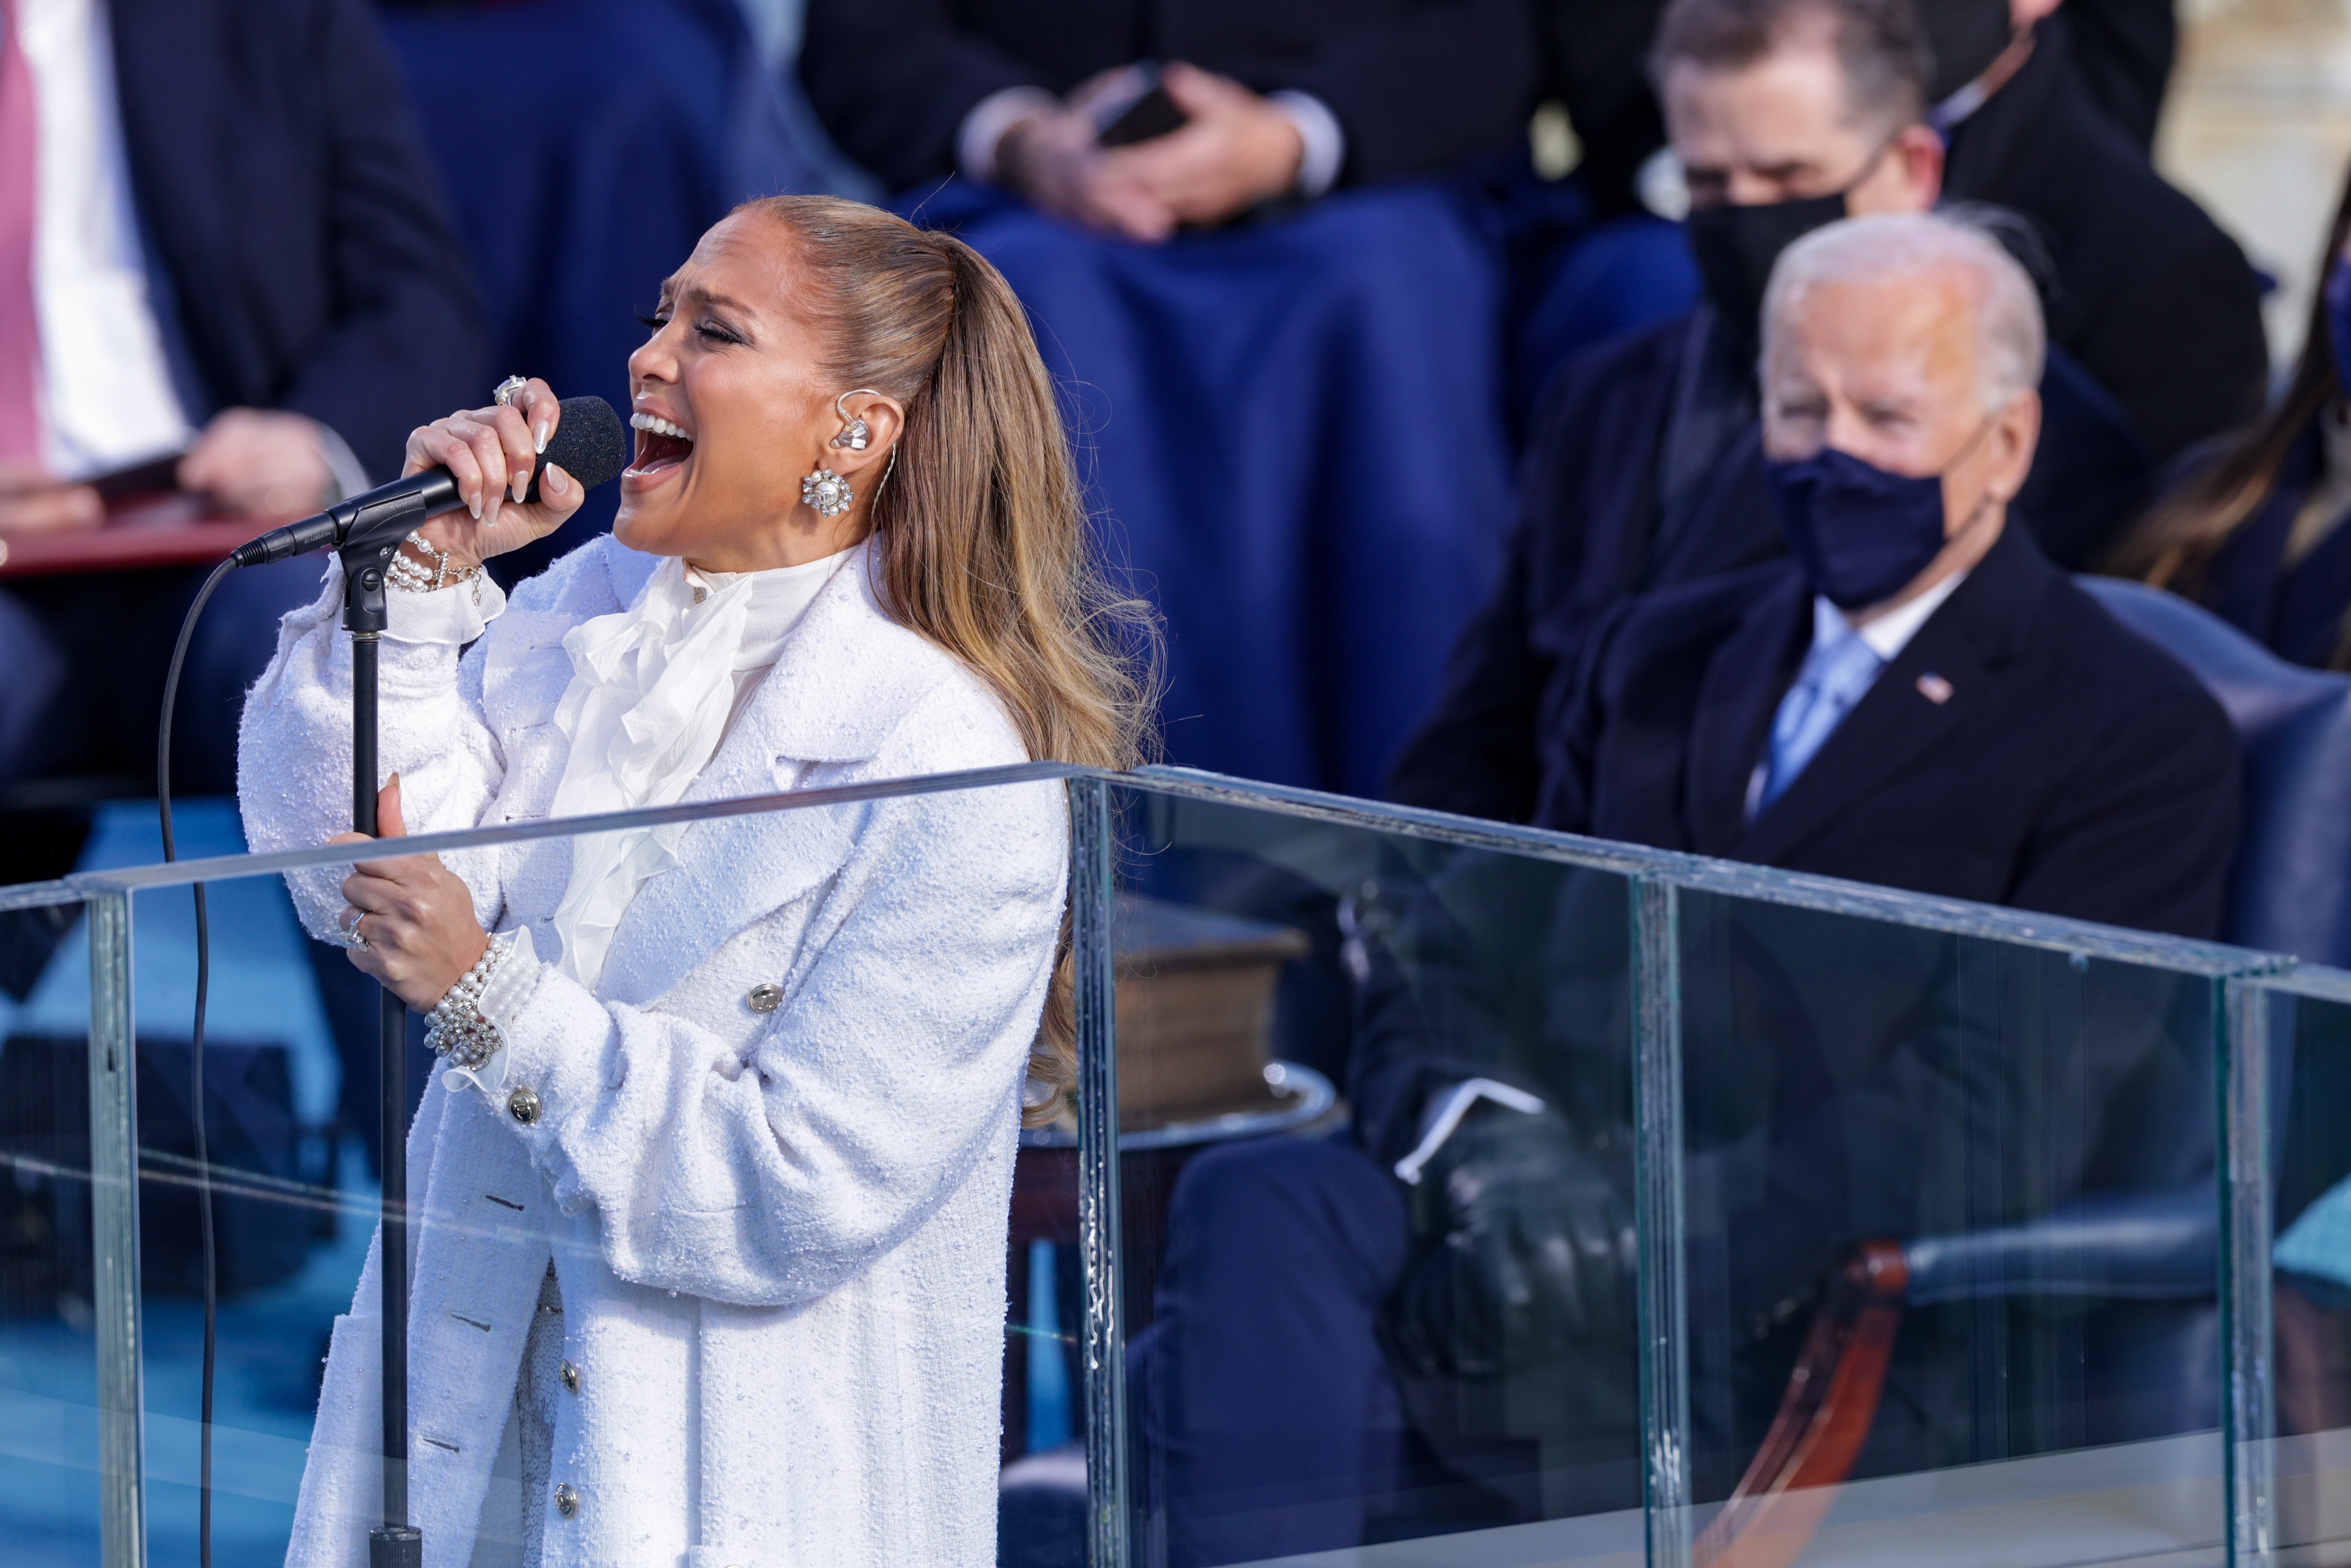 WASHINGTON, DC - 20 DE JANEIRO: Jennifer Lopez canta durante a inauguração do presidente eleito dos EUA Joe Biden na Frente Oeste do Capitólio dos EUA em 20 de janeiro de 2021 em Washington, DC. Durante a cerimônia de inauguração de hoje, Joe Biden se torna o 46º presidente dos Estados Unidos. (Foto: Alex Wong / Getty Images)